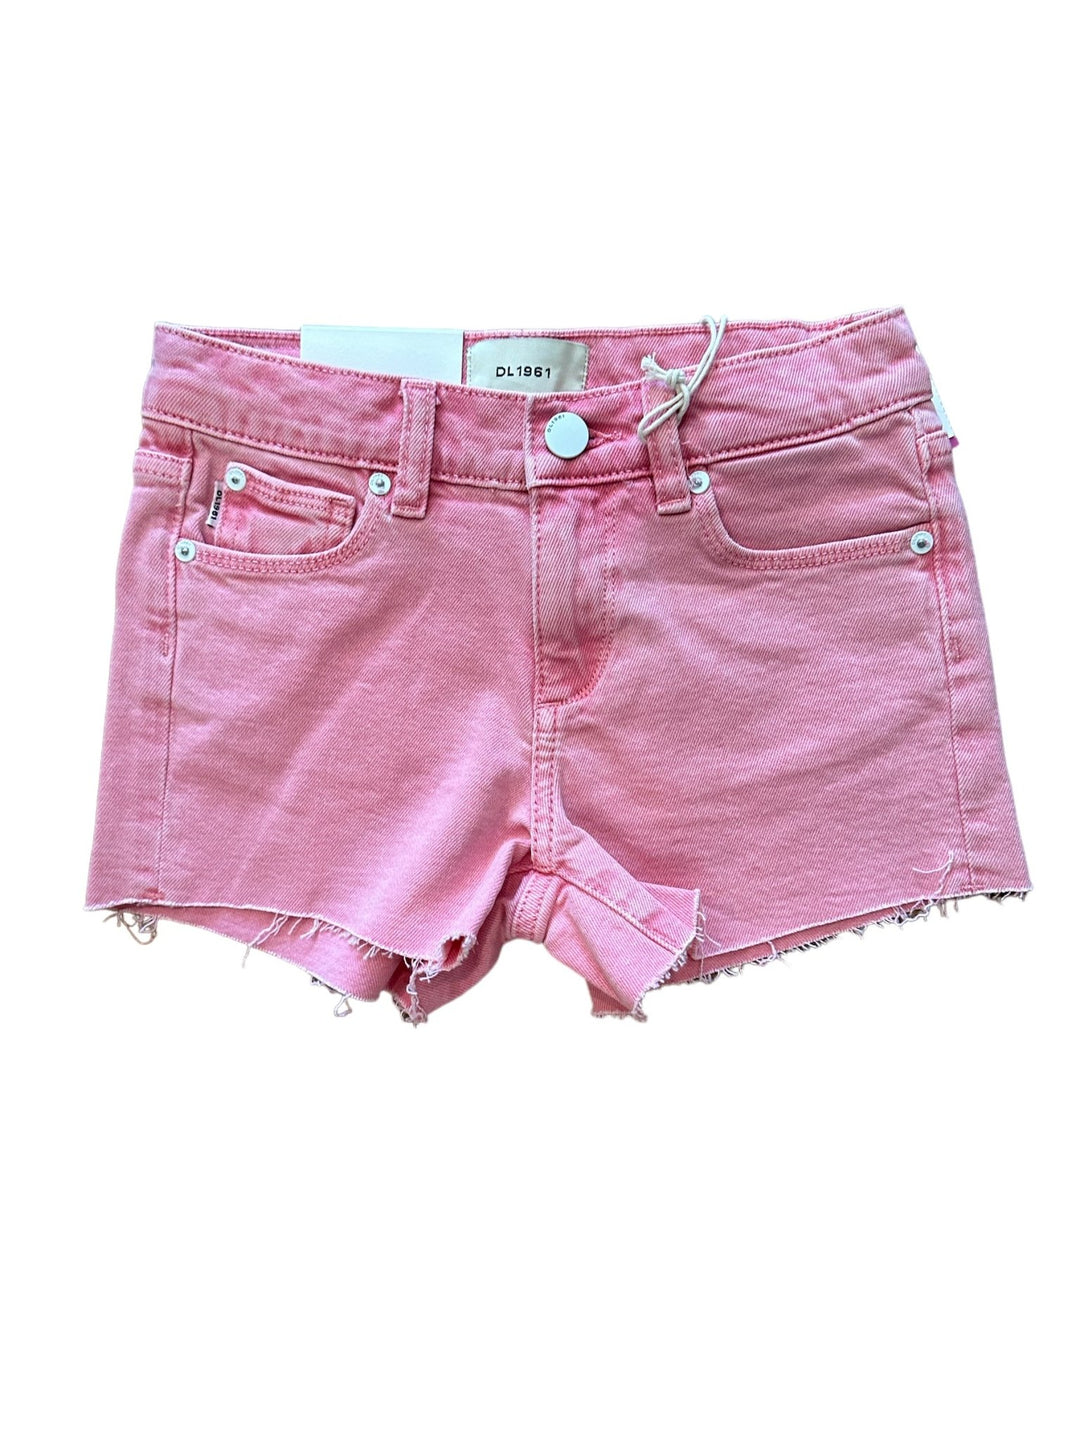 DL1961 Lucy Flamingo Denim Shorts - jernijacks